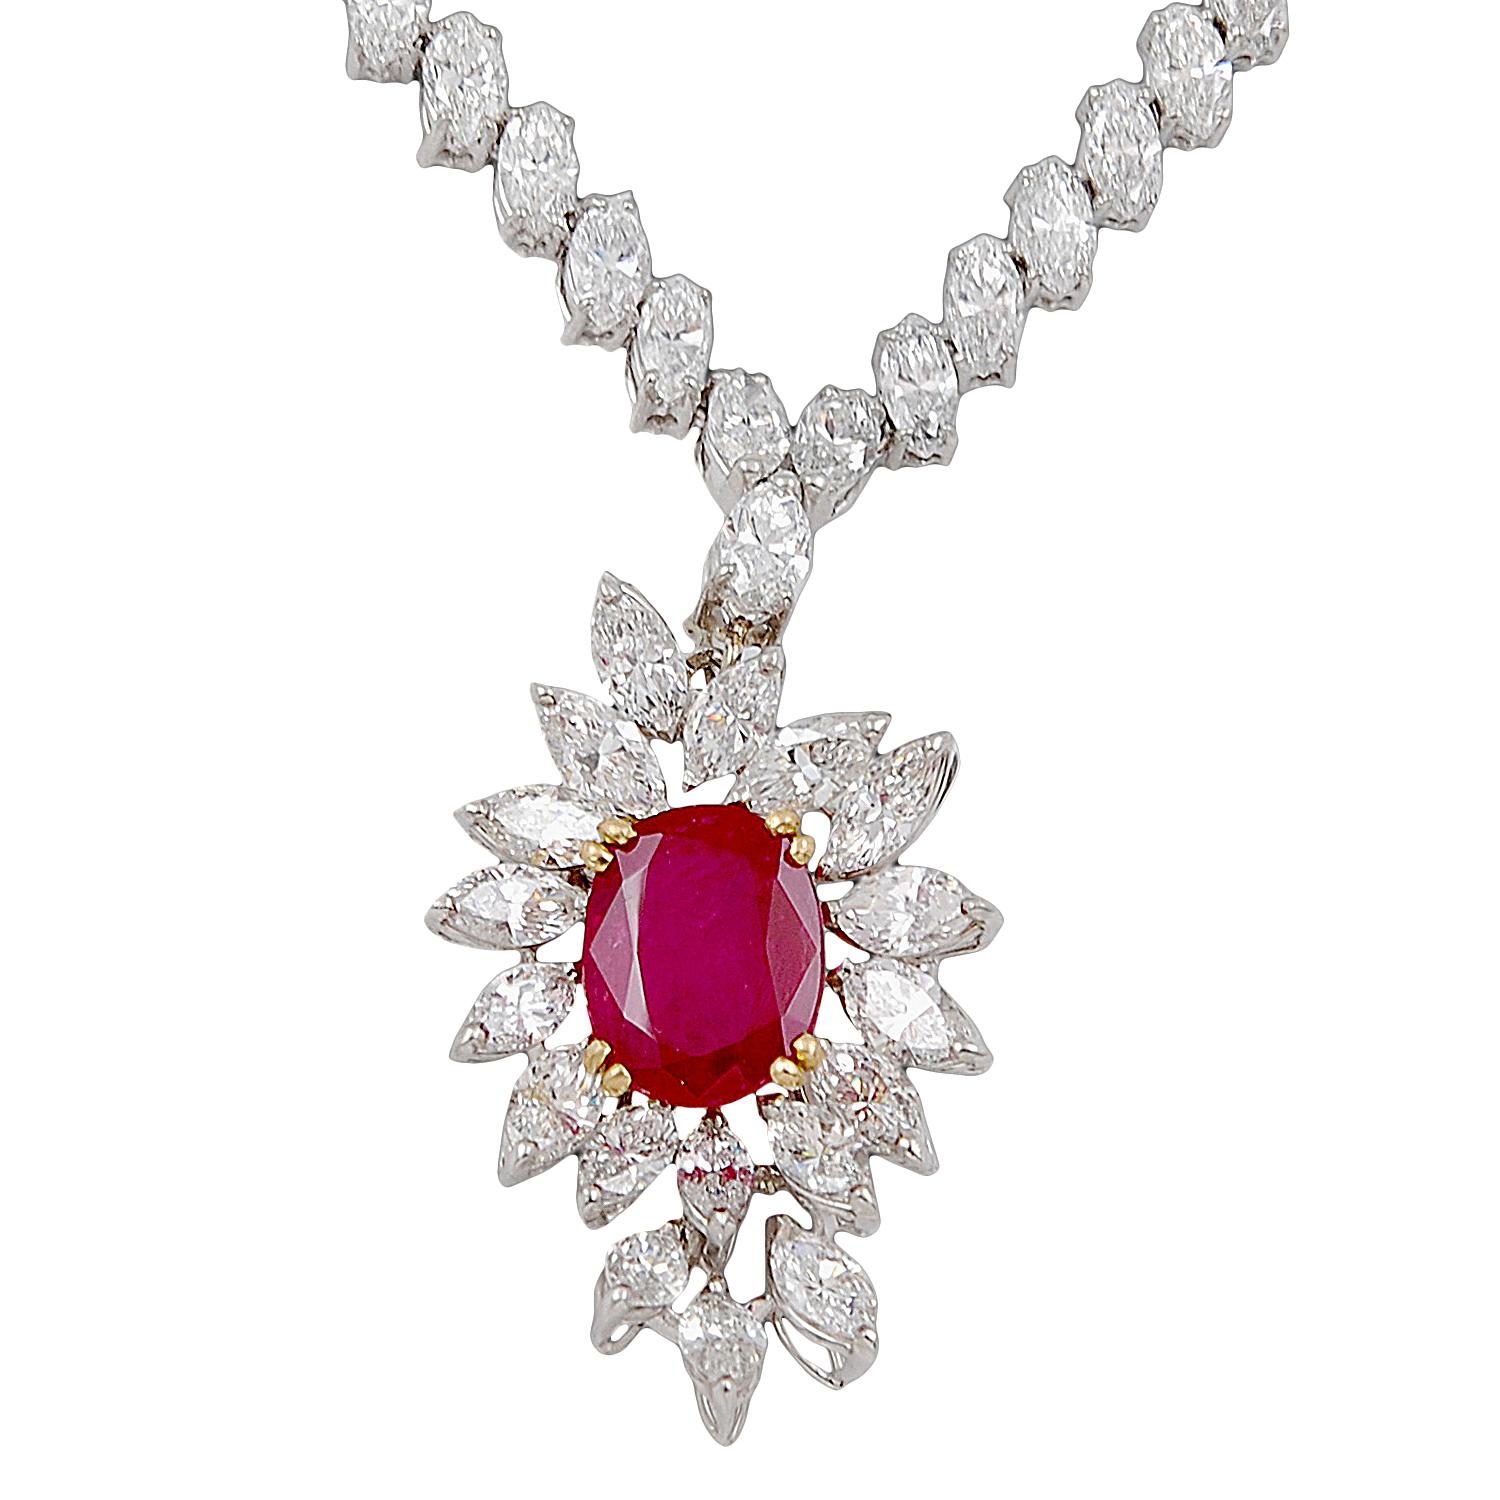 Boucheron Paris Vintage 5.27 Carats Ruby Diamond Necklace
environ 26 carats de diamants et 5,27 carats de rubis
vers les années 1970
